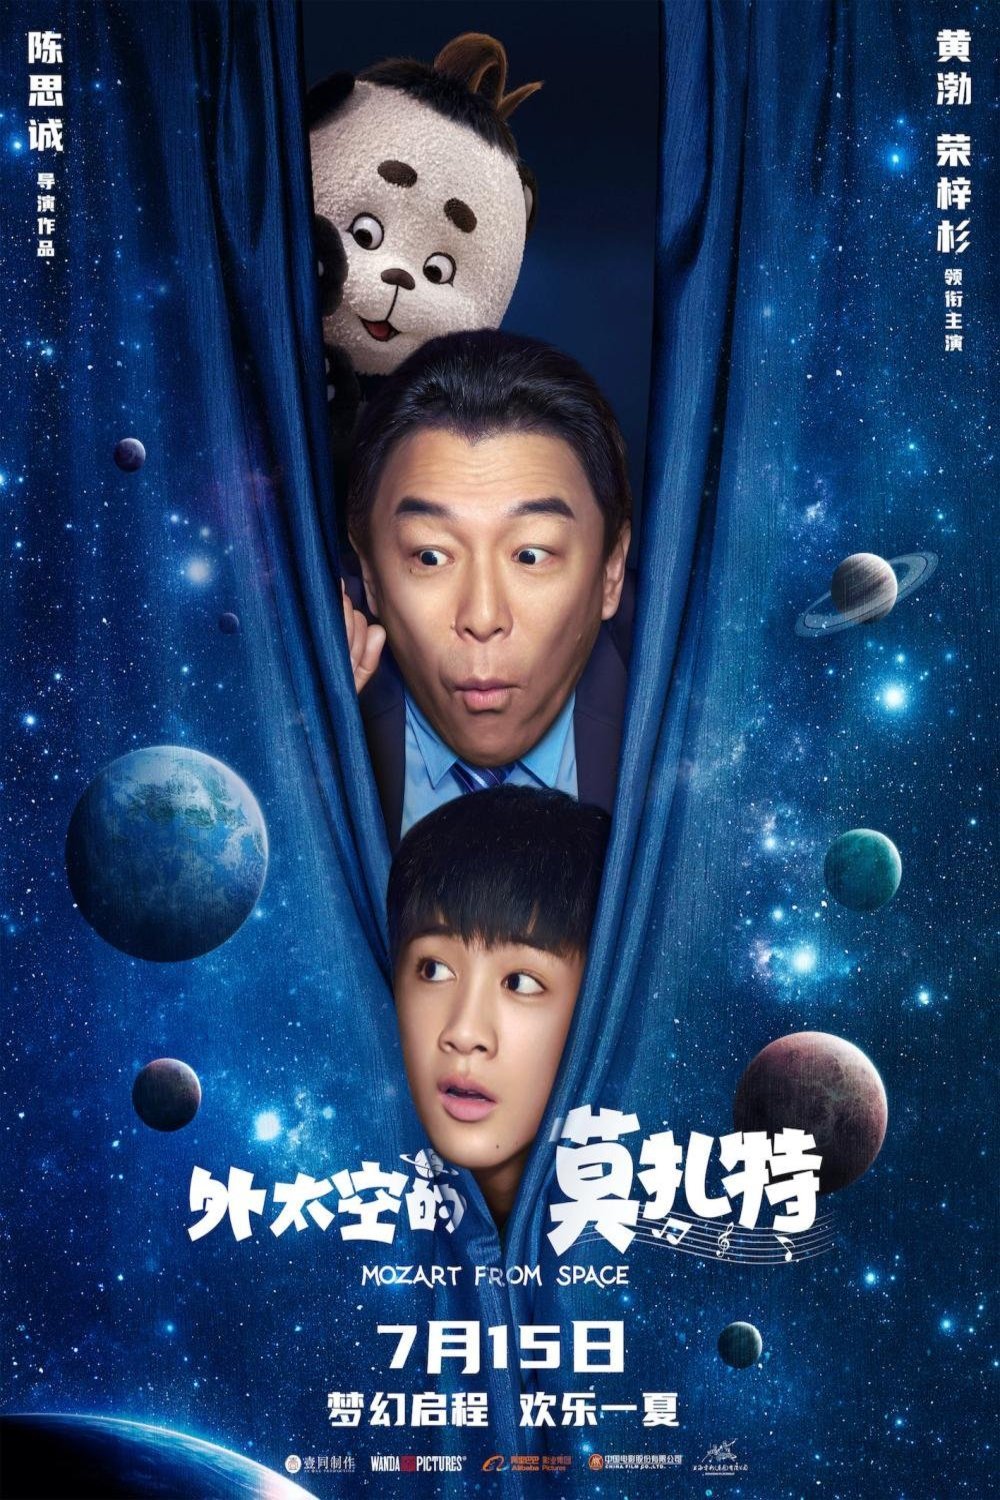 L'affiche originale du film Mozart from Space en Chinois